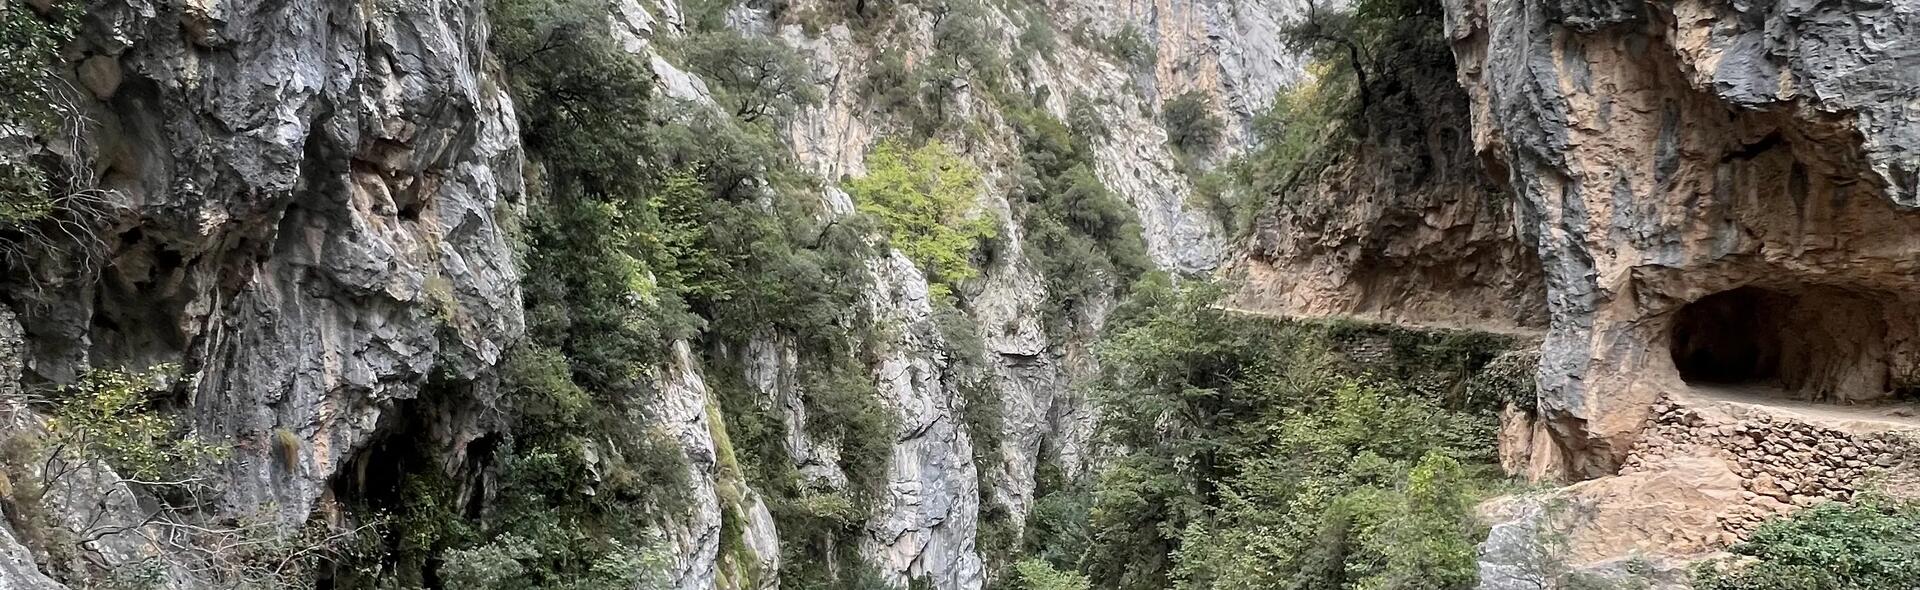 Ruta del Cares: así es la ruta más famosa de los Picos de Europa